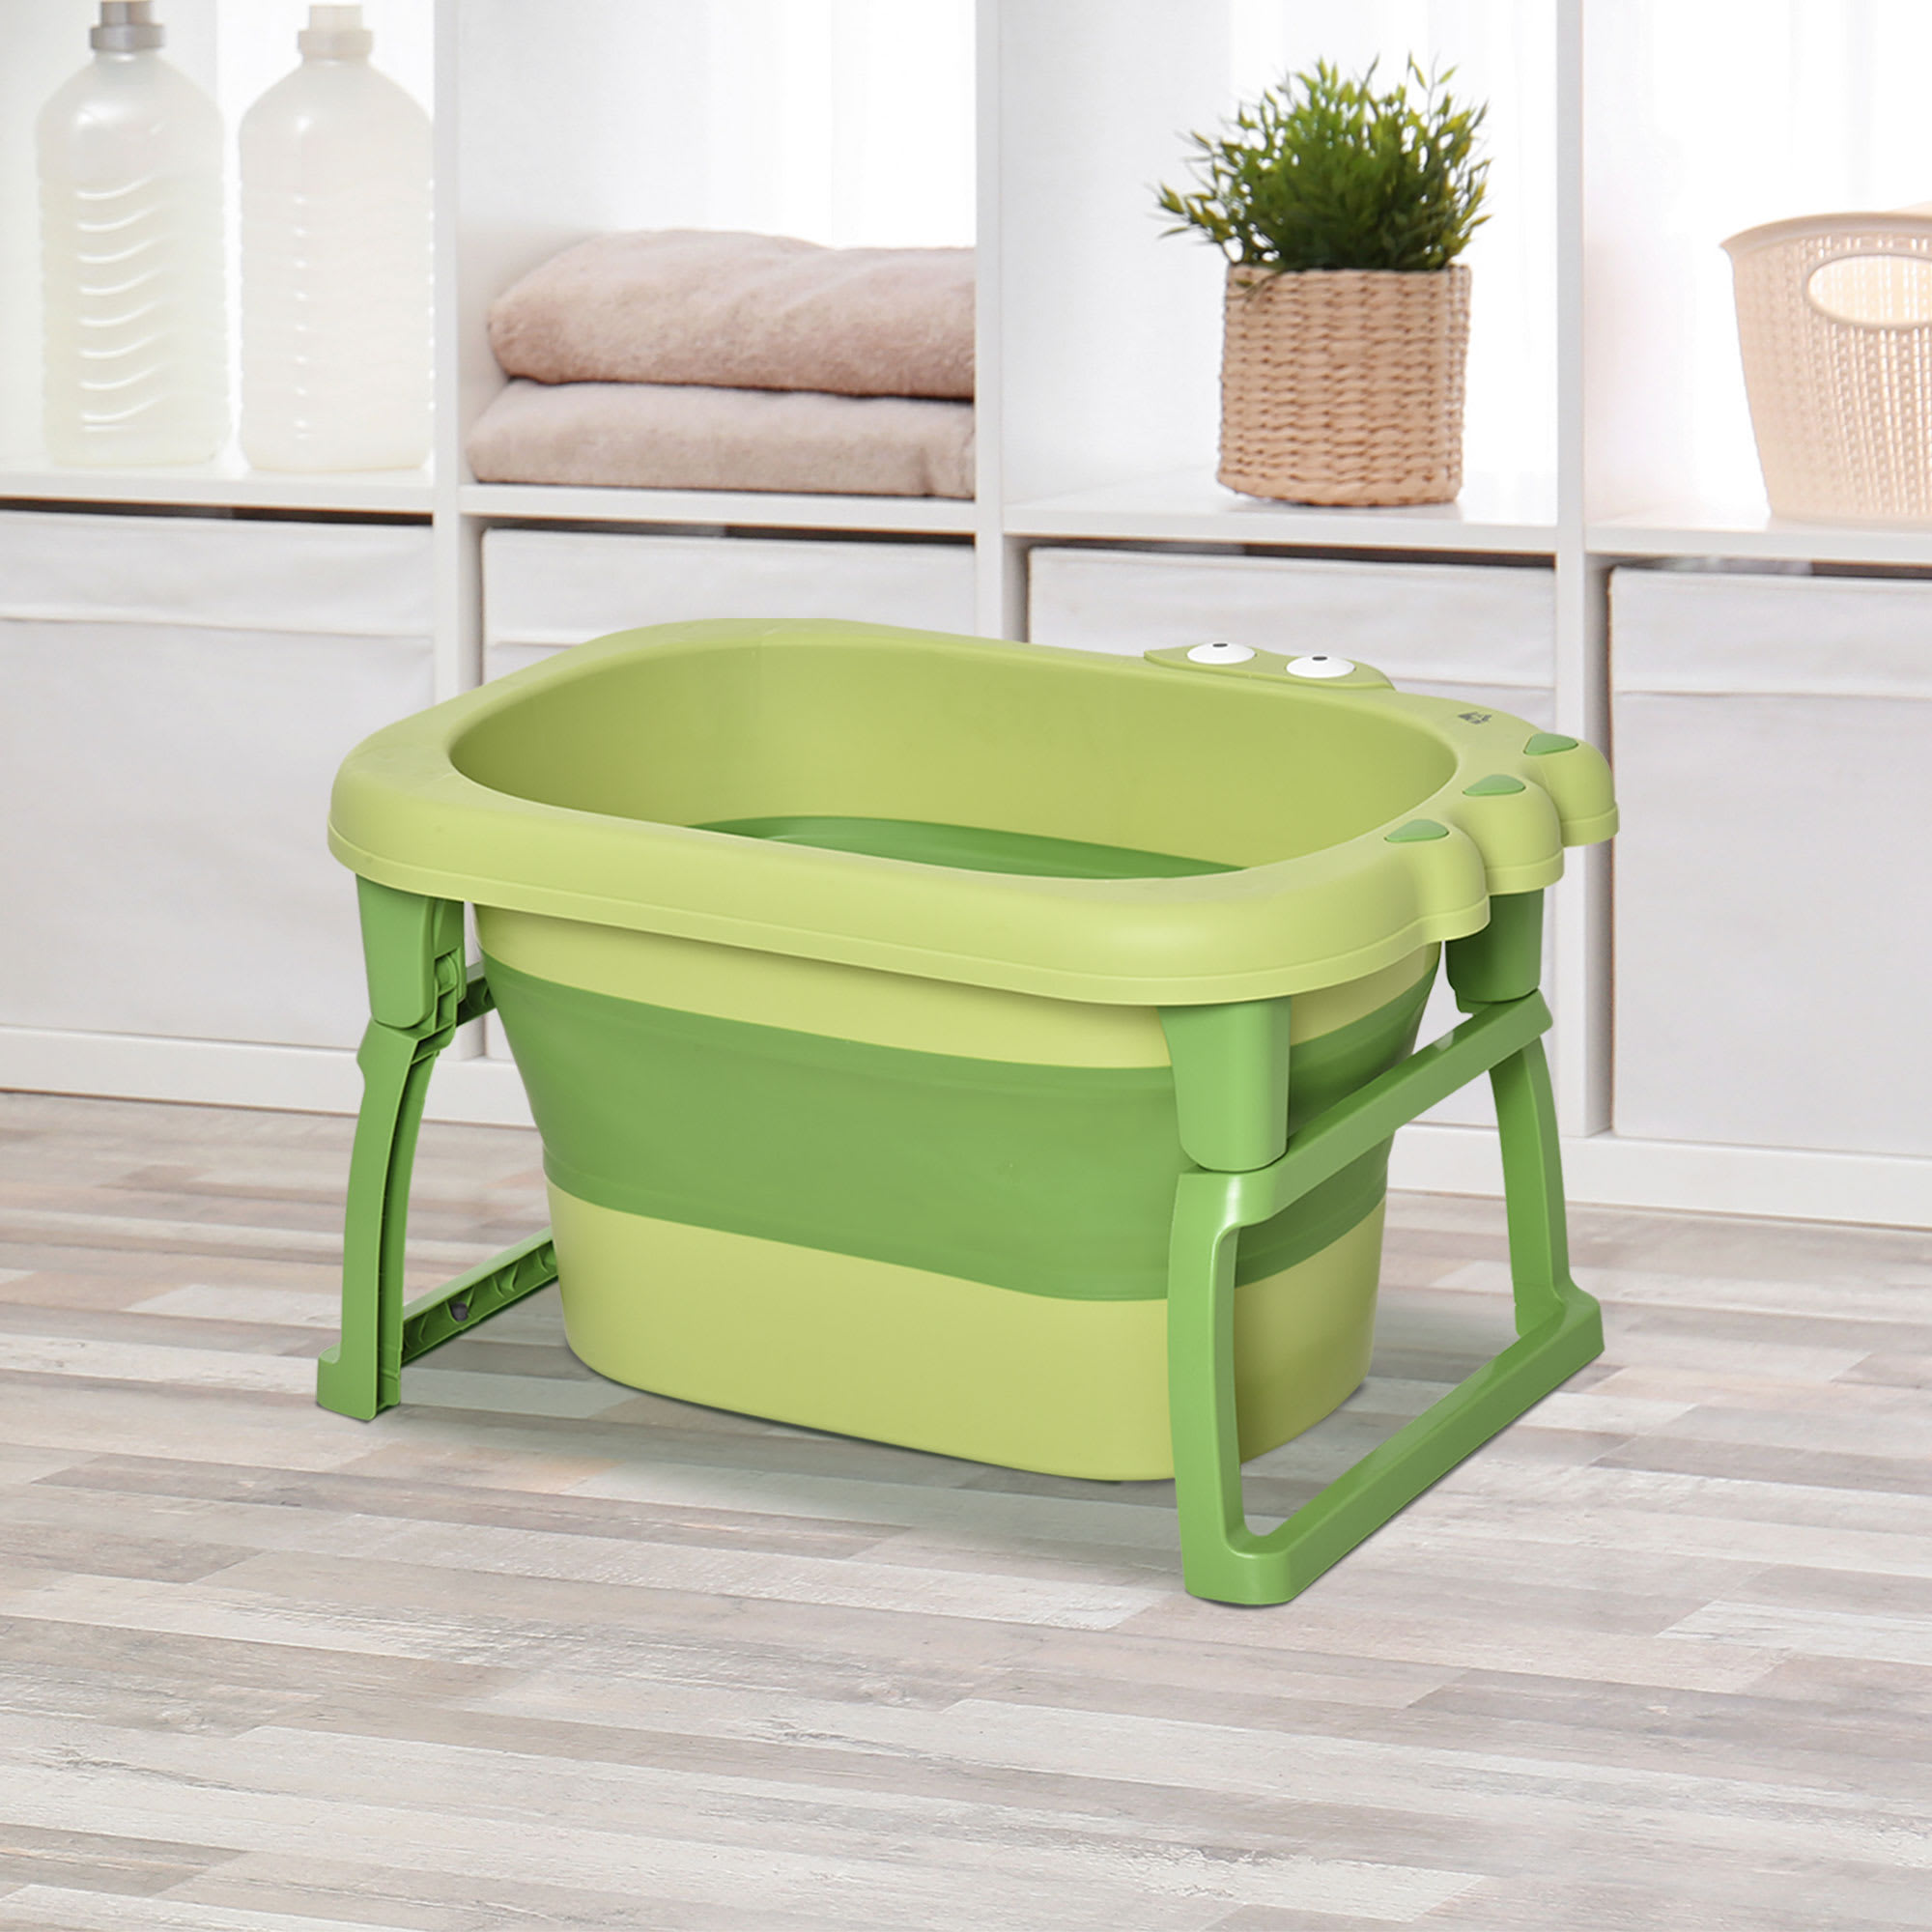 Funda ajustable verde-menta para vestidor-bañera de bebé